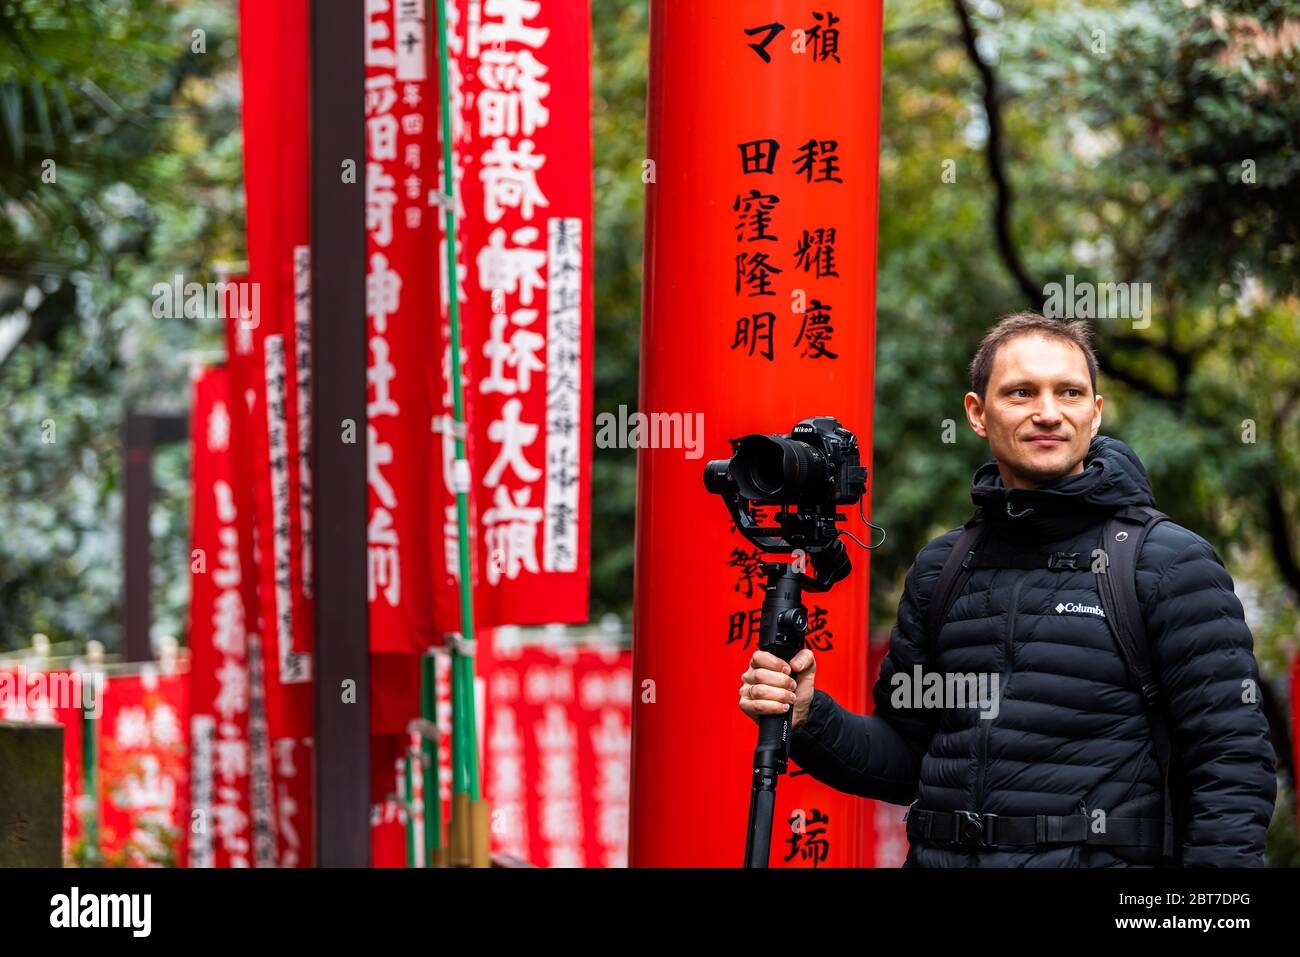 Tokyo, Giappone - 31 marzo 2019: Il santuario di HIE torii porta con l'uomo fotografo che filma gimbal e fotocamera nel quartiere di Akasaka reparto Foto Stock